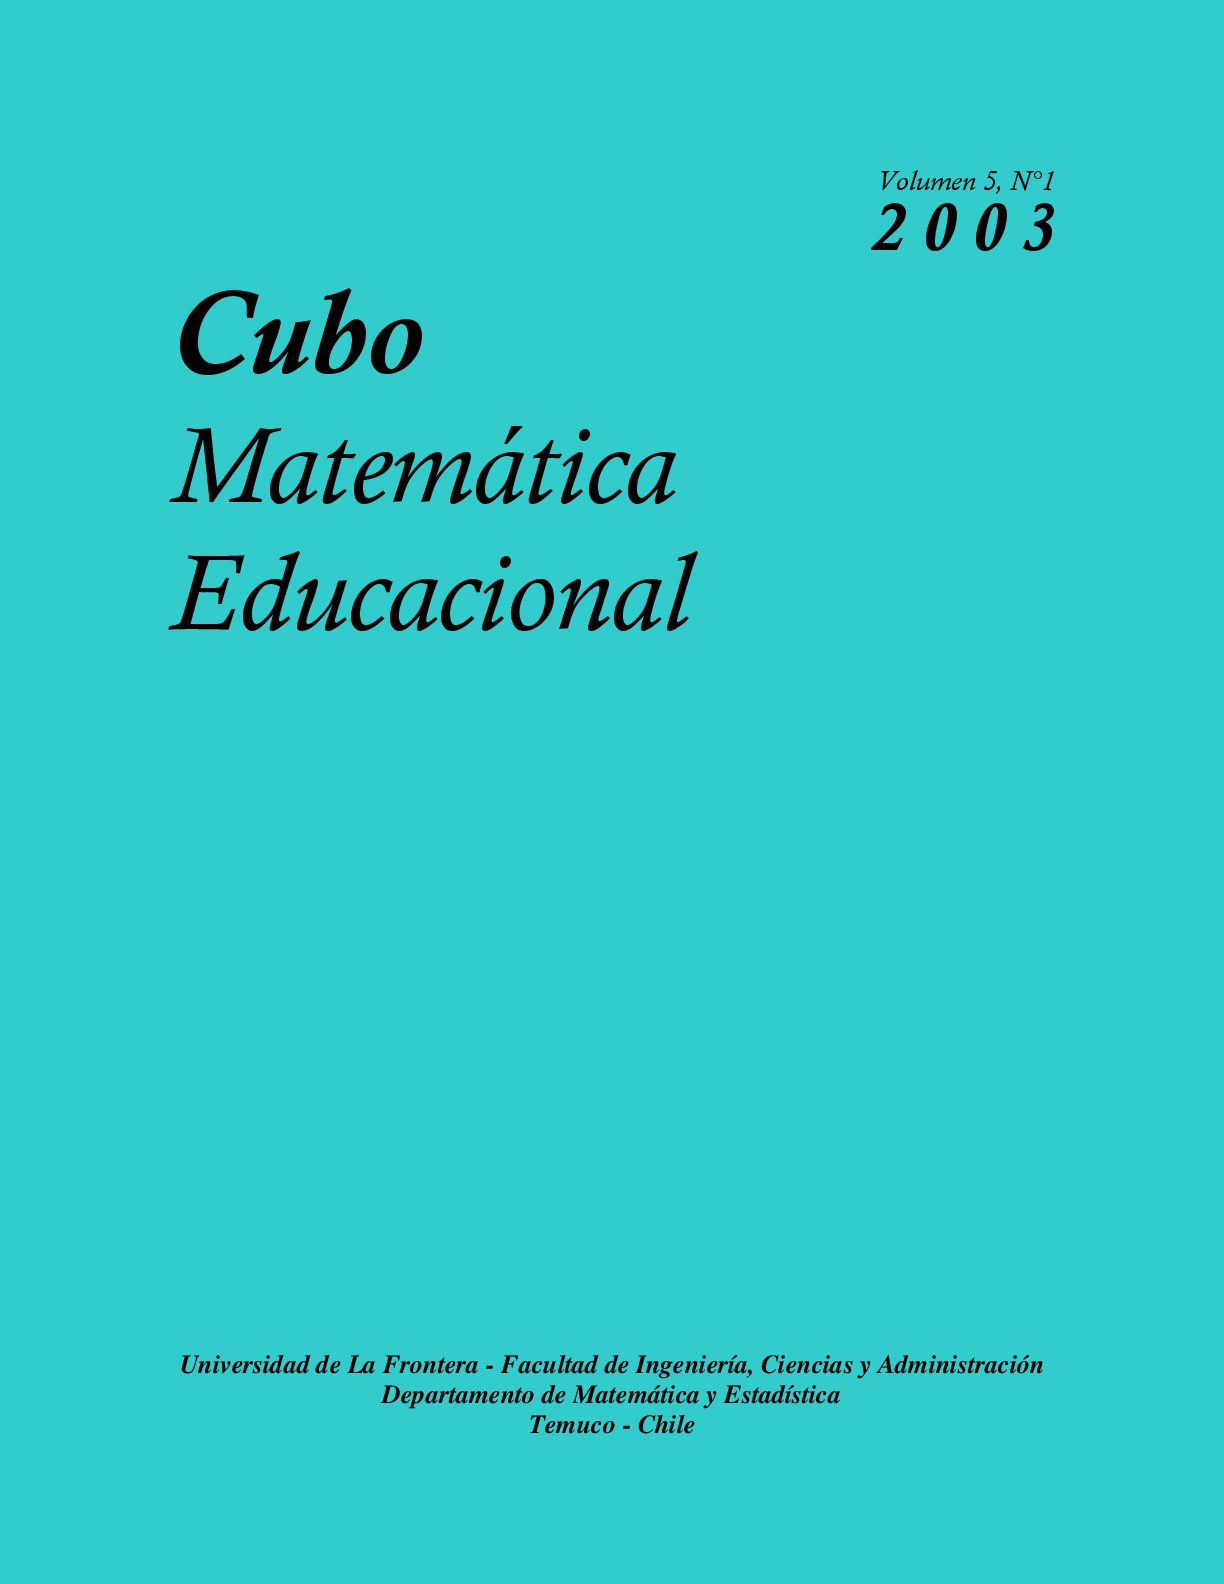 					View Vol. 5 No. 1 (2003): CUBO, Matemática Educacional
				